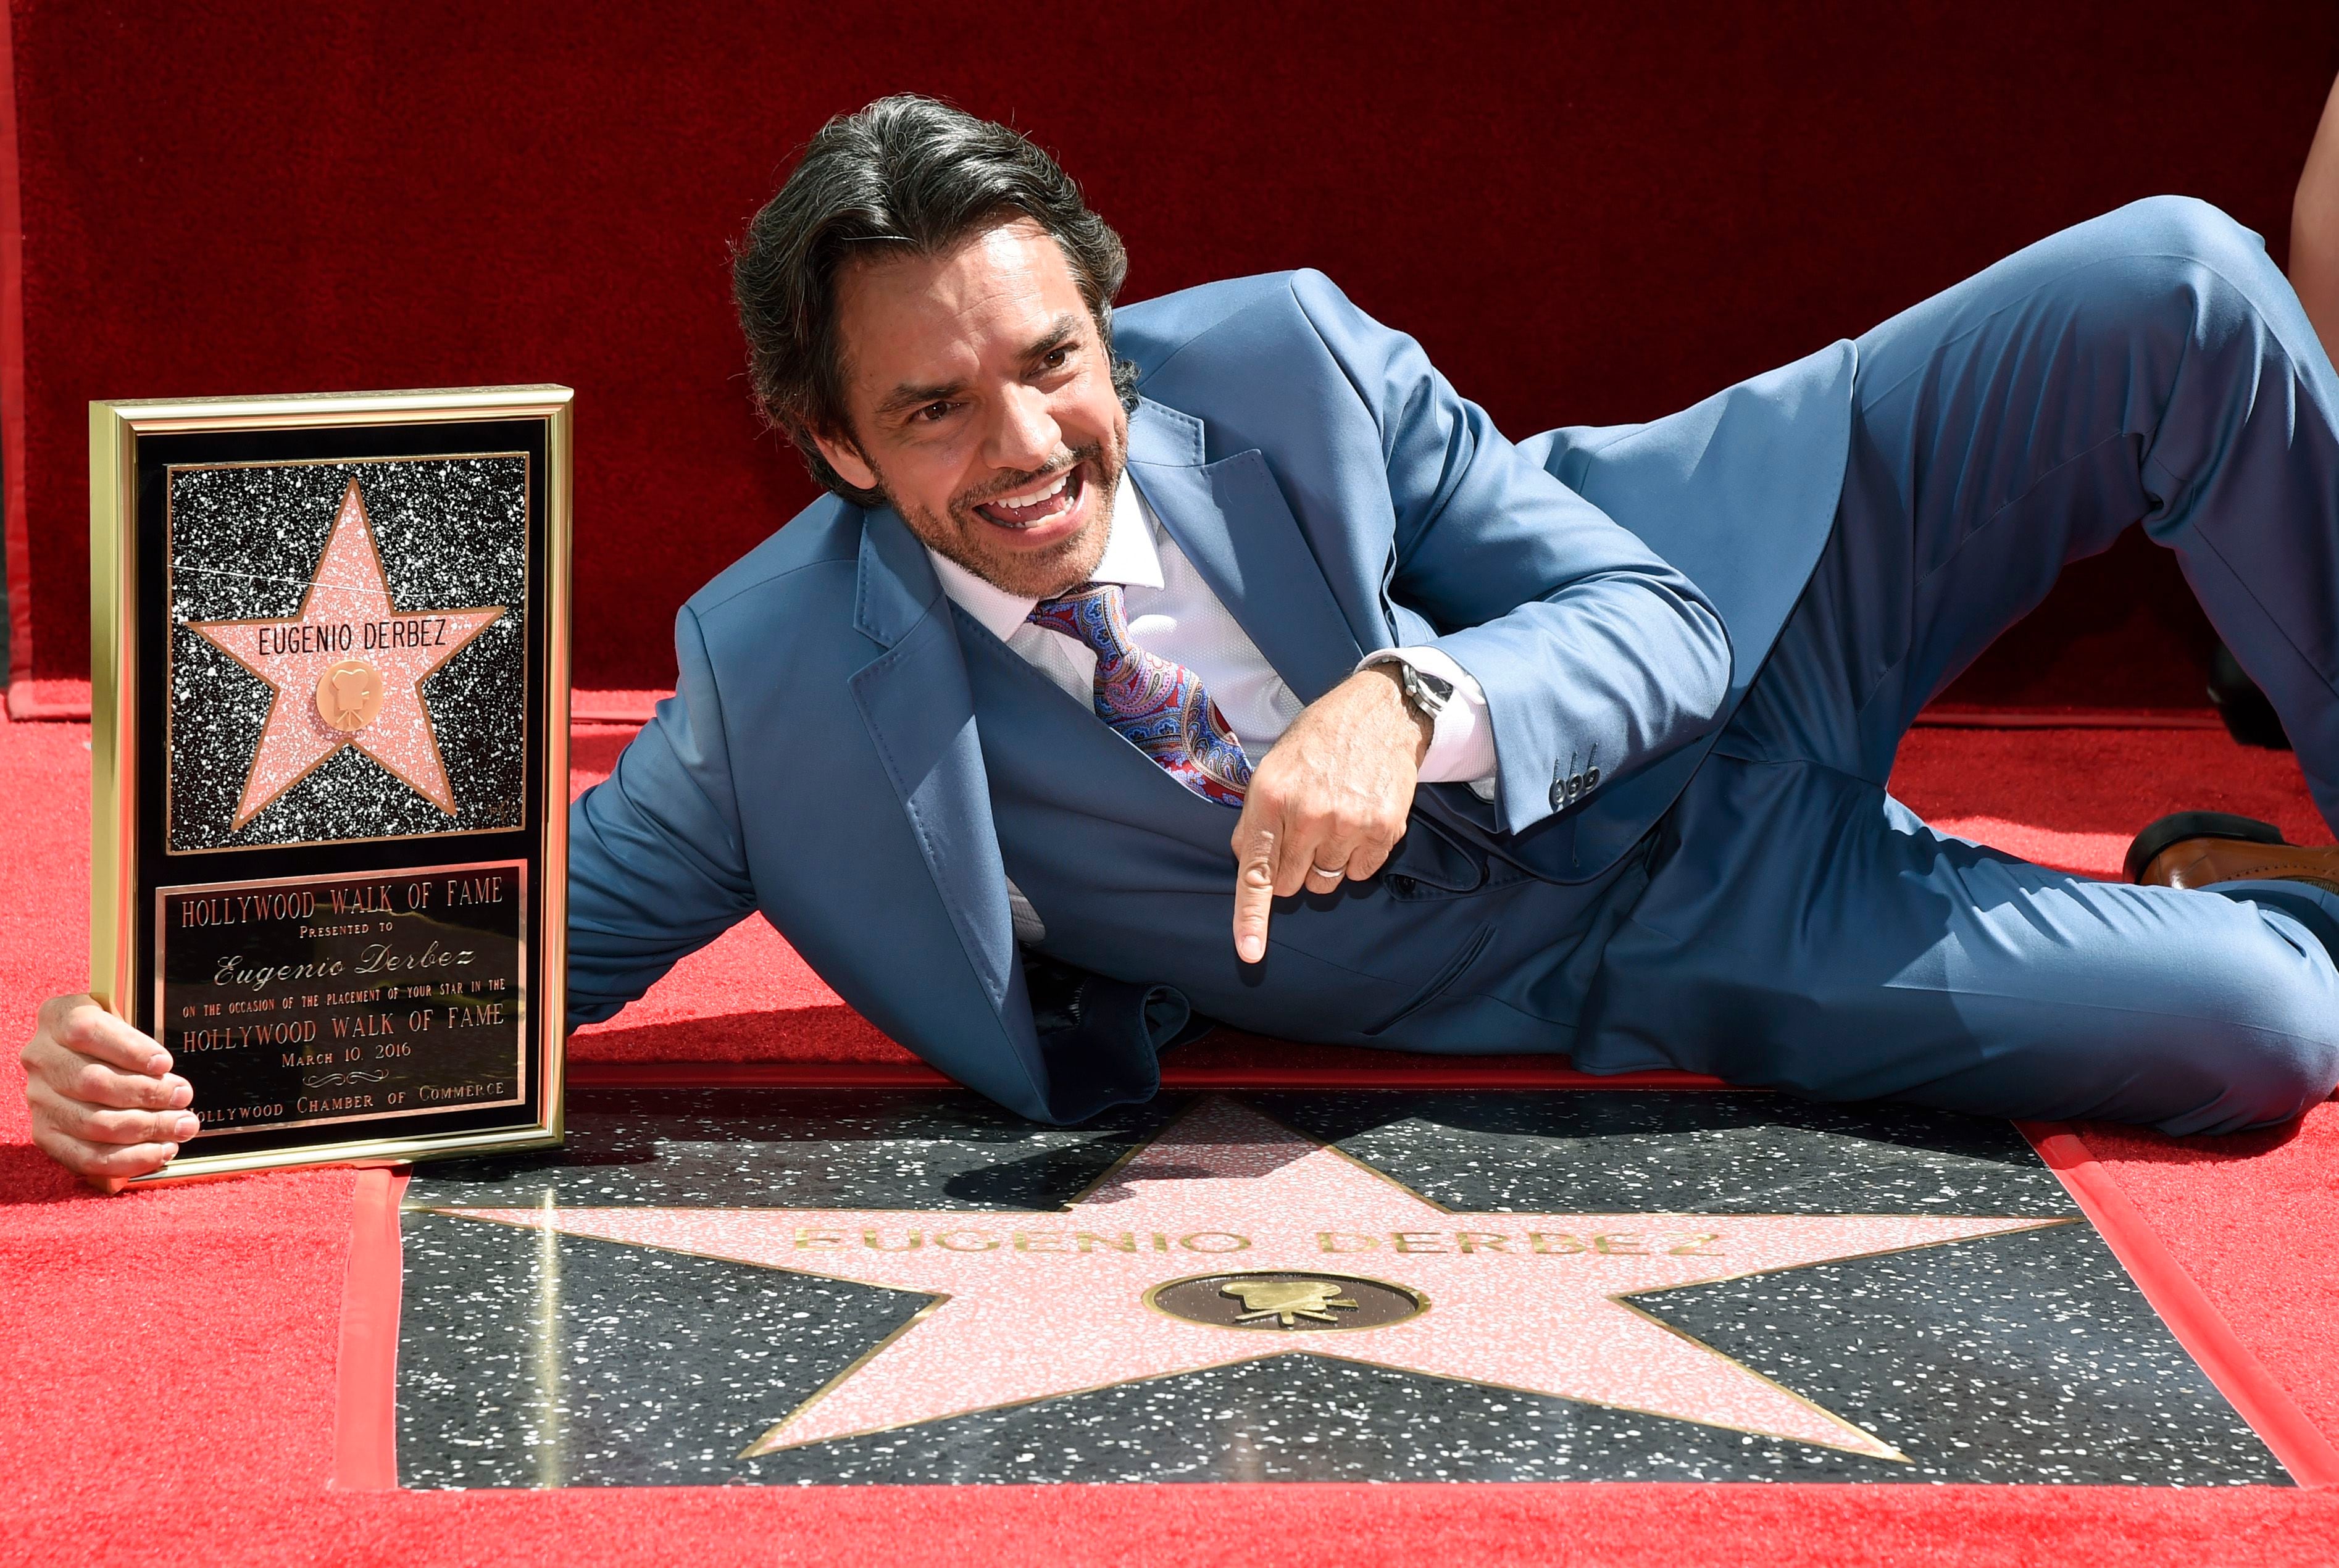 El comediante mexicano Eugenio Derbez obtuvo su reconocimiento en el Paseo de la fama de Hollywood el 10 de marzo del 2016. Foto: AP/Chris Pizzello